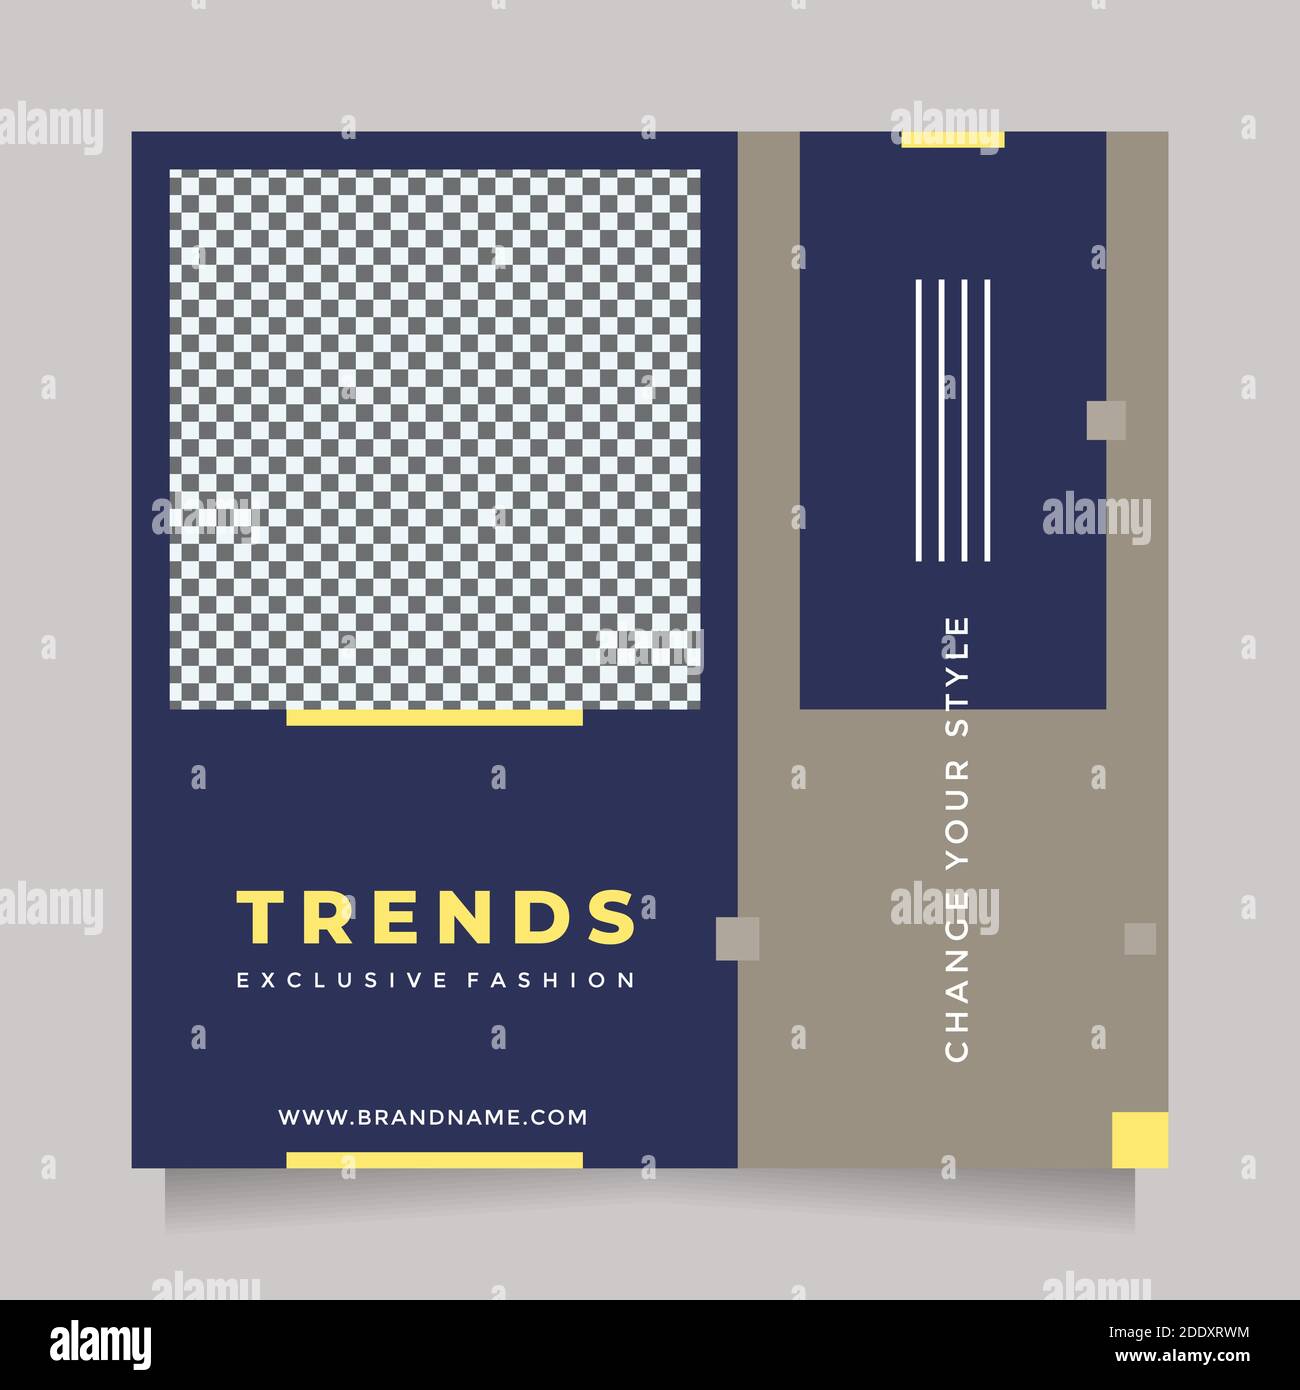 Trendy und minimalistisches Design Social Media Post und Web-Banner-Vorlage für digitales Marketing. Editierbare Förderung Design Marke Mode Stock Vektor